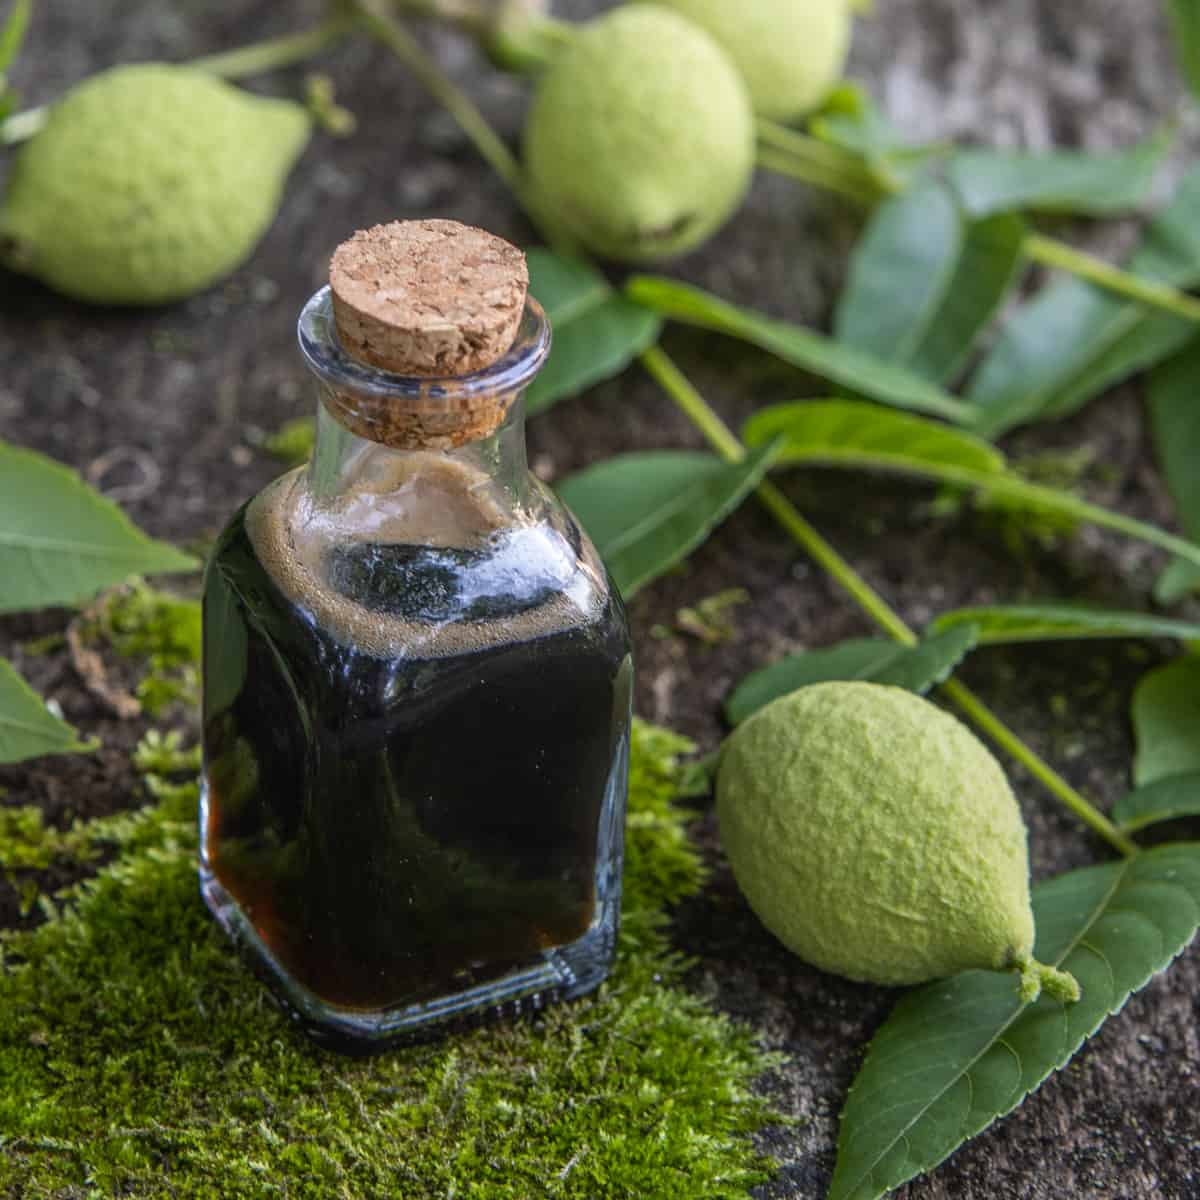 green walnut syrup in a jar next to green walnuts 